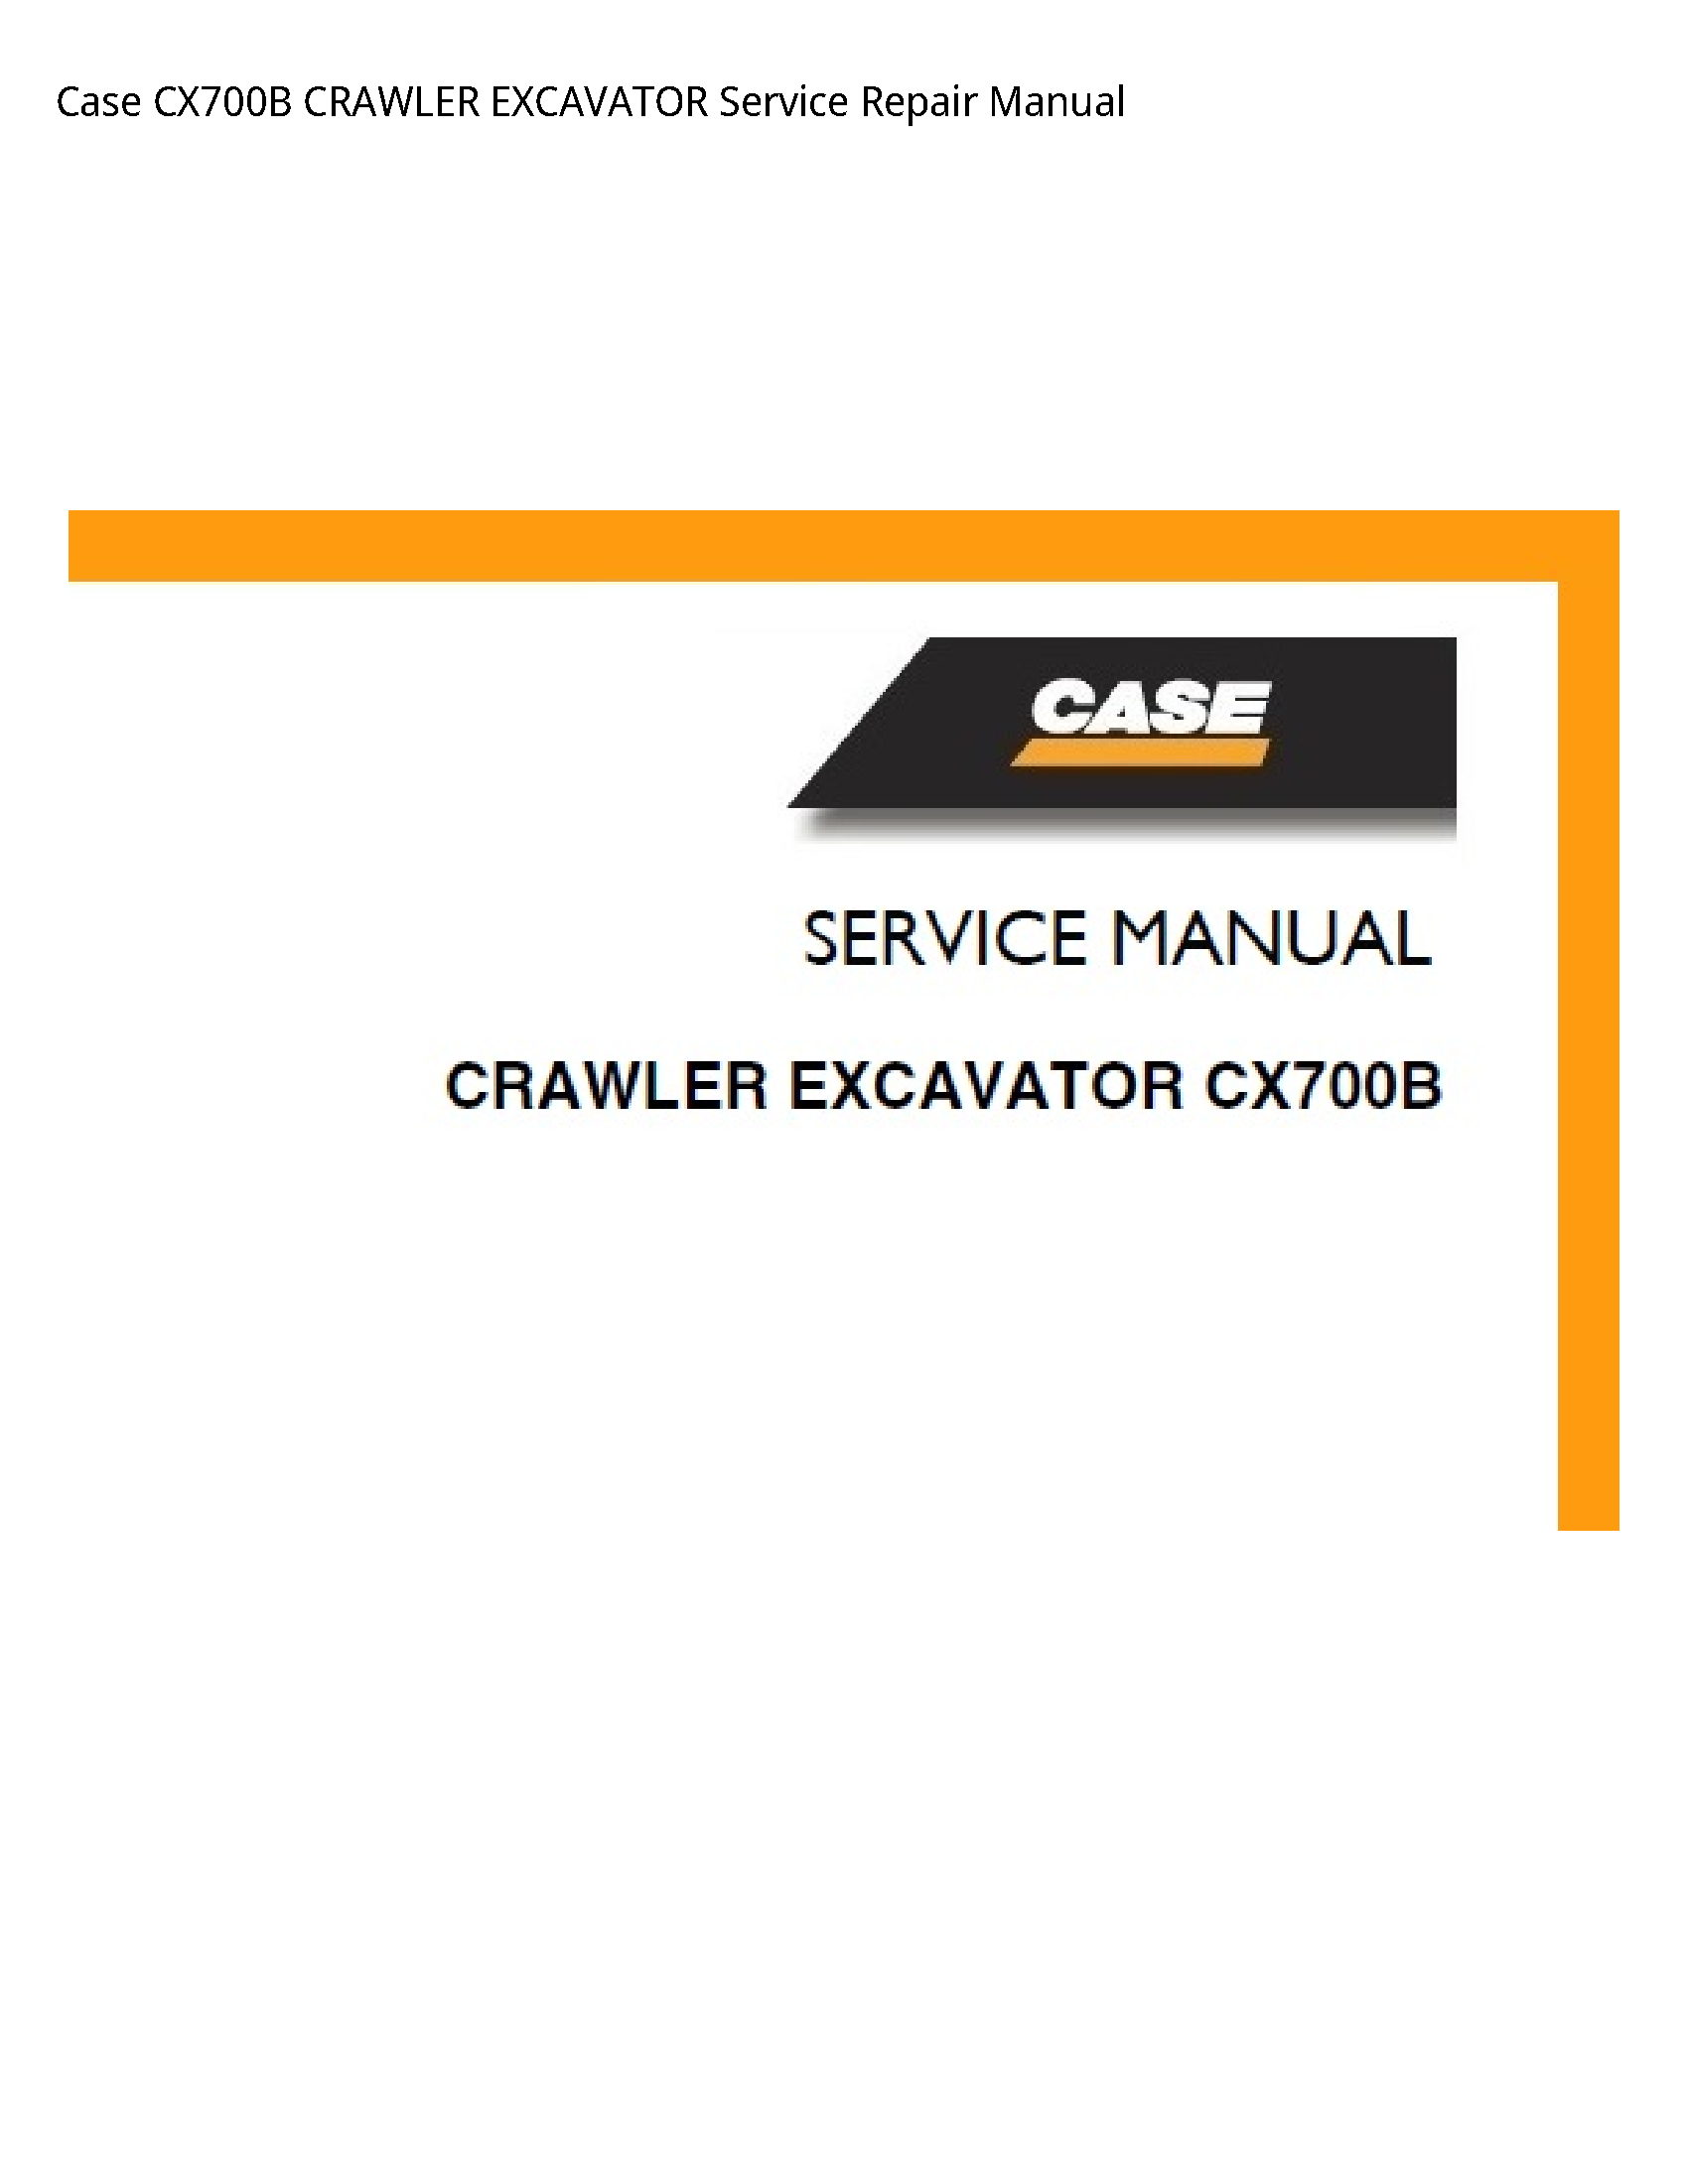 Case/Case IH CX700B CRAWLER EXCAVATOR manual